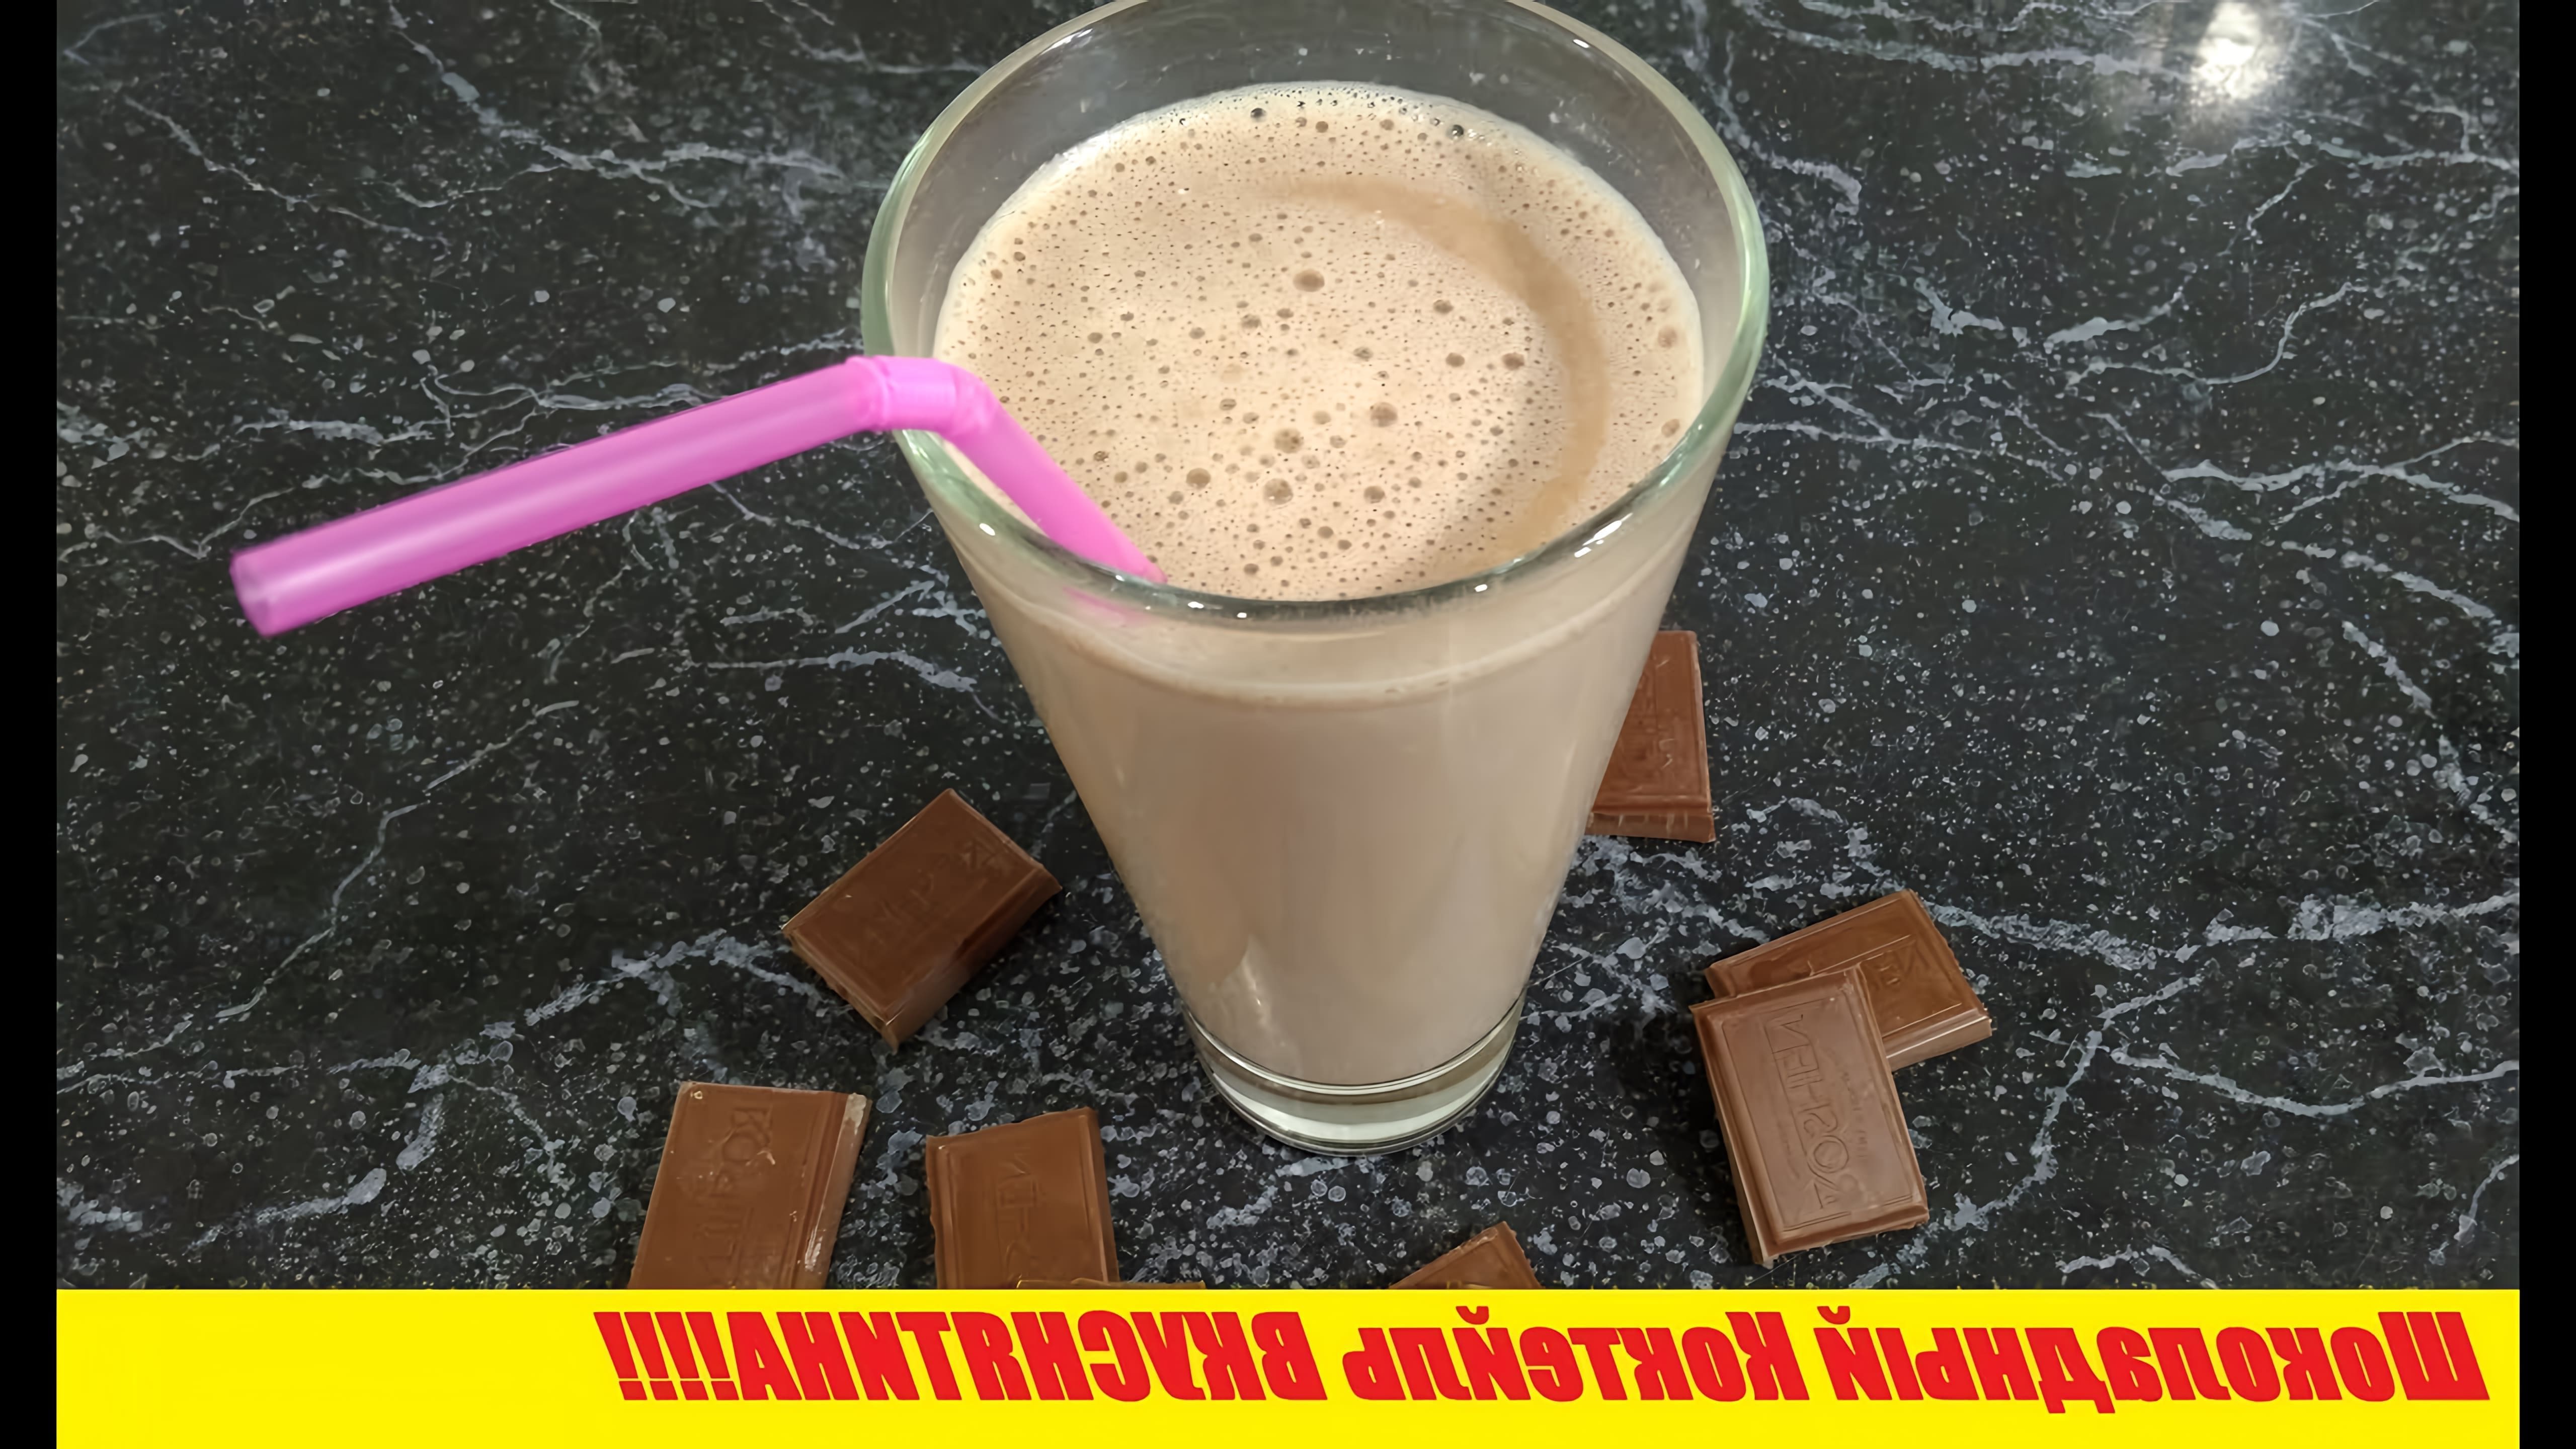 В этом видео демонстрируется рецепт шоколадного коктейля, который можно приготовить в домашних условиях